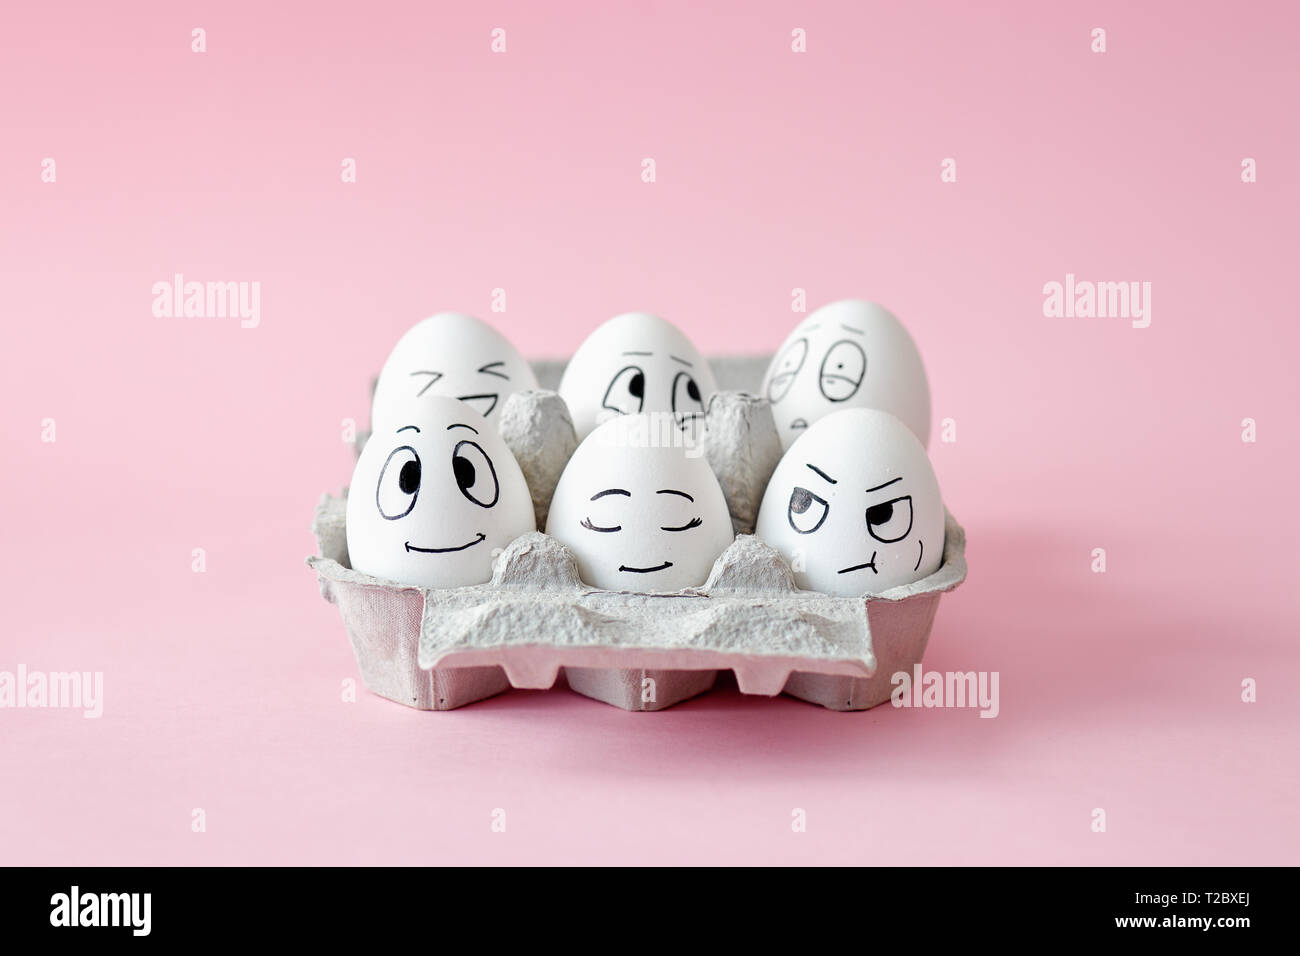 Oeufs de Pâques en compagnie de drôles d'expressions faciales. Les œufs avec différents visages en carton d'oeufs. Banque D'Images